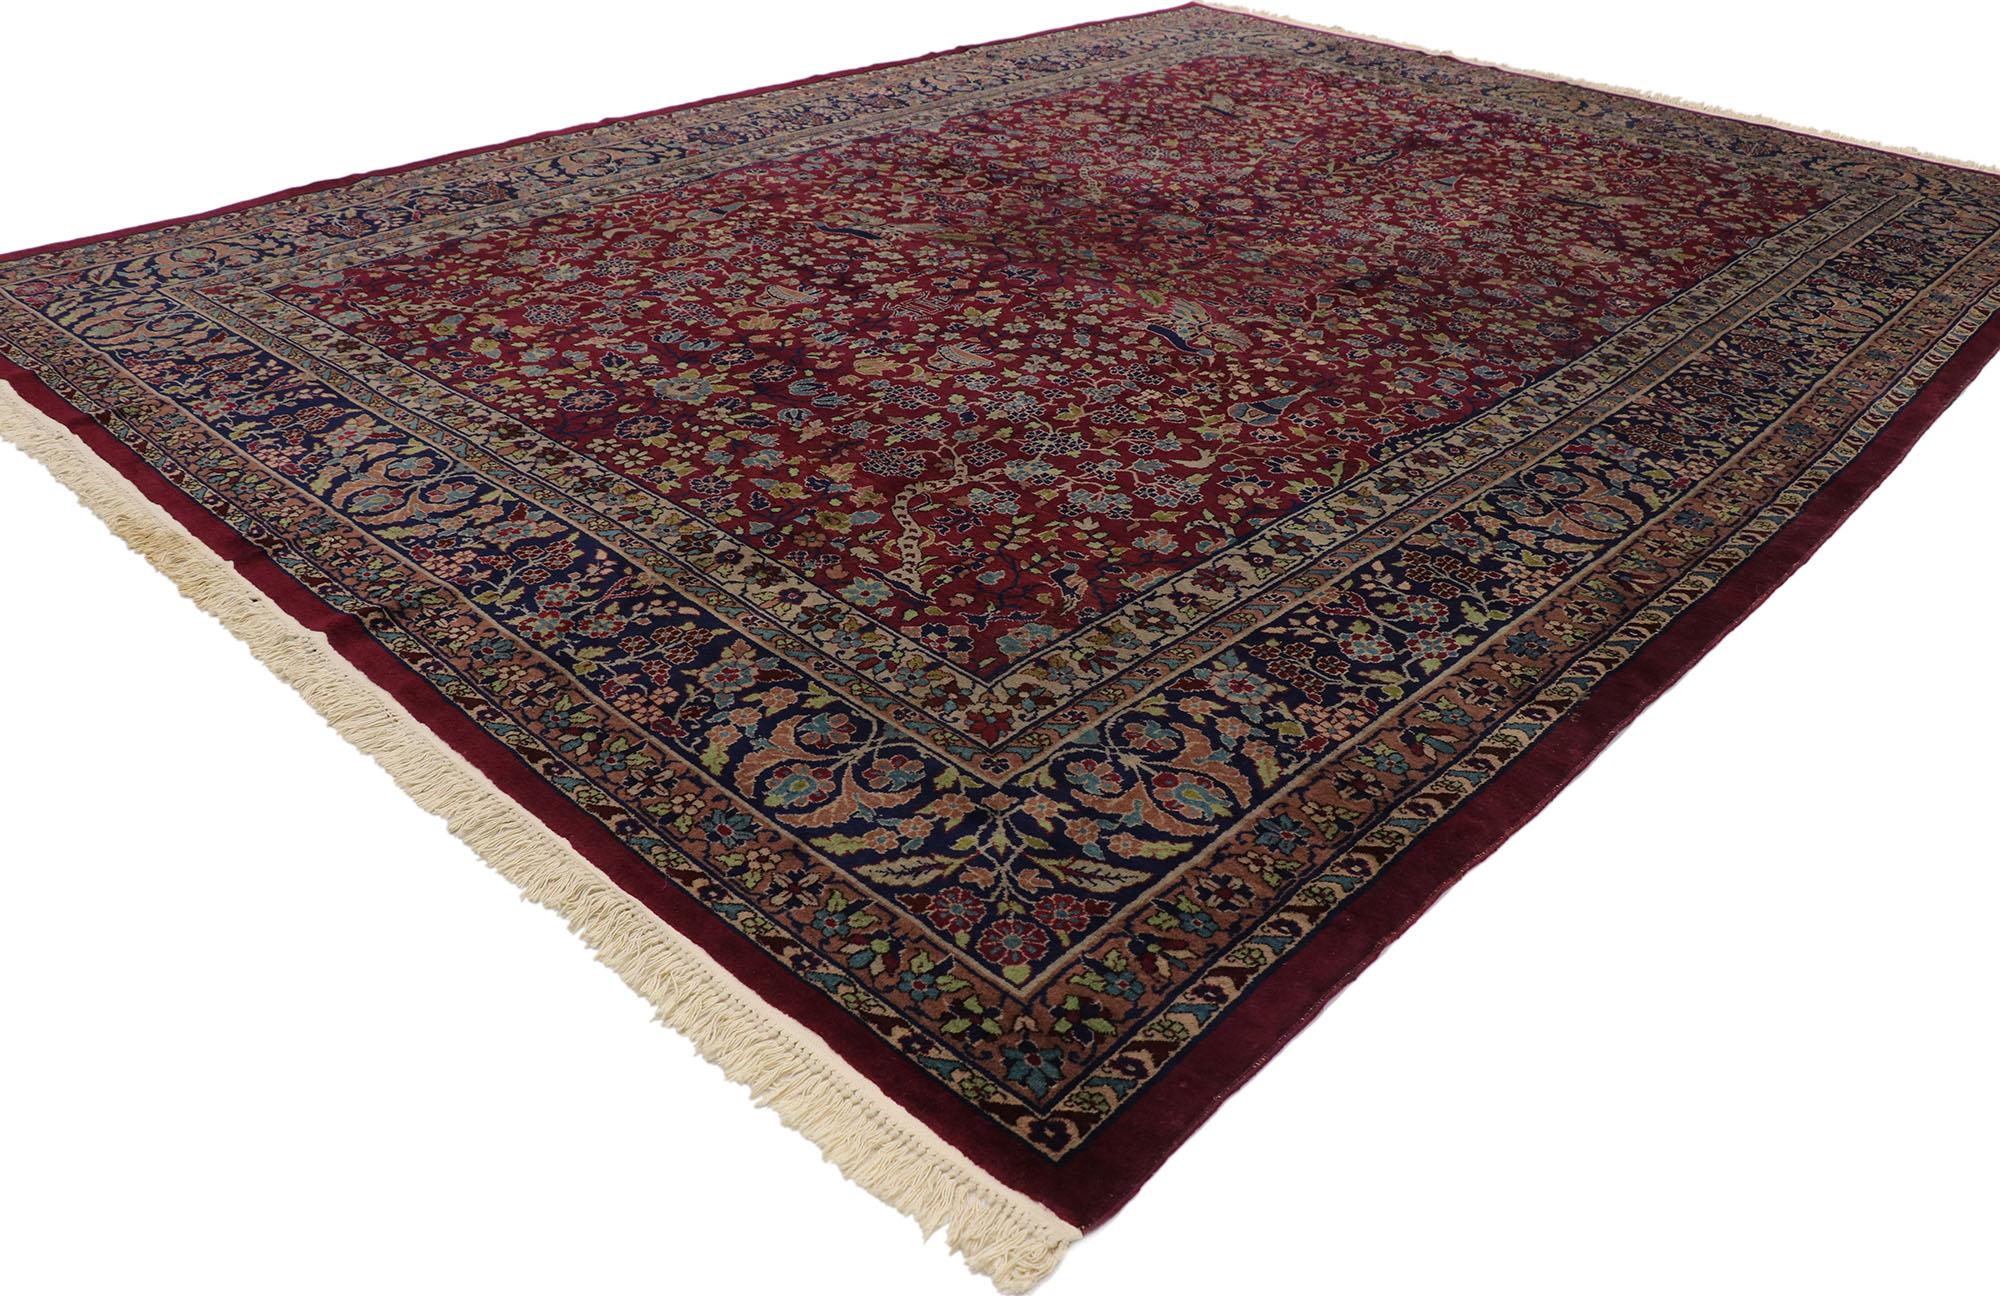 77541, antiker indischer Agra-Teppich im viktorianischen Renaissance-Stil. Dieser handgeknüpfte, antike indische Agra-Teppich aus Wolle verkörpert den viktorianischen Renaissancestil in betörender Schönheit und reich an Farben. Das abgewetzte